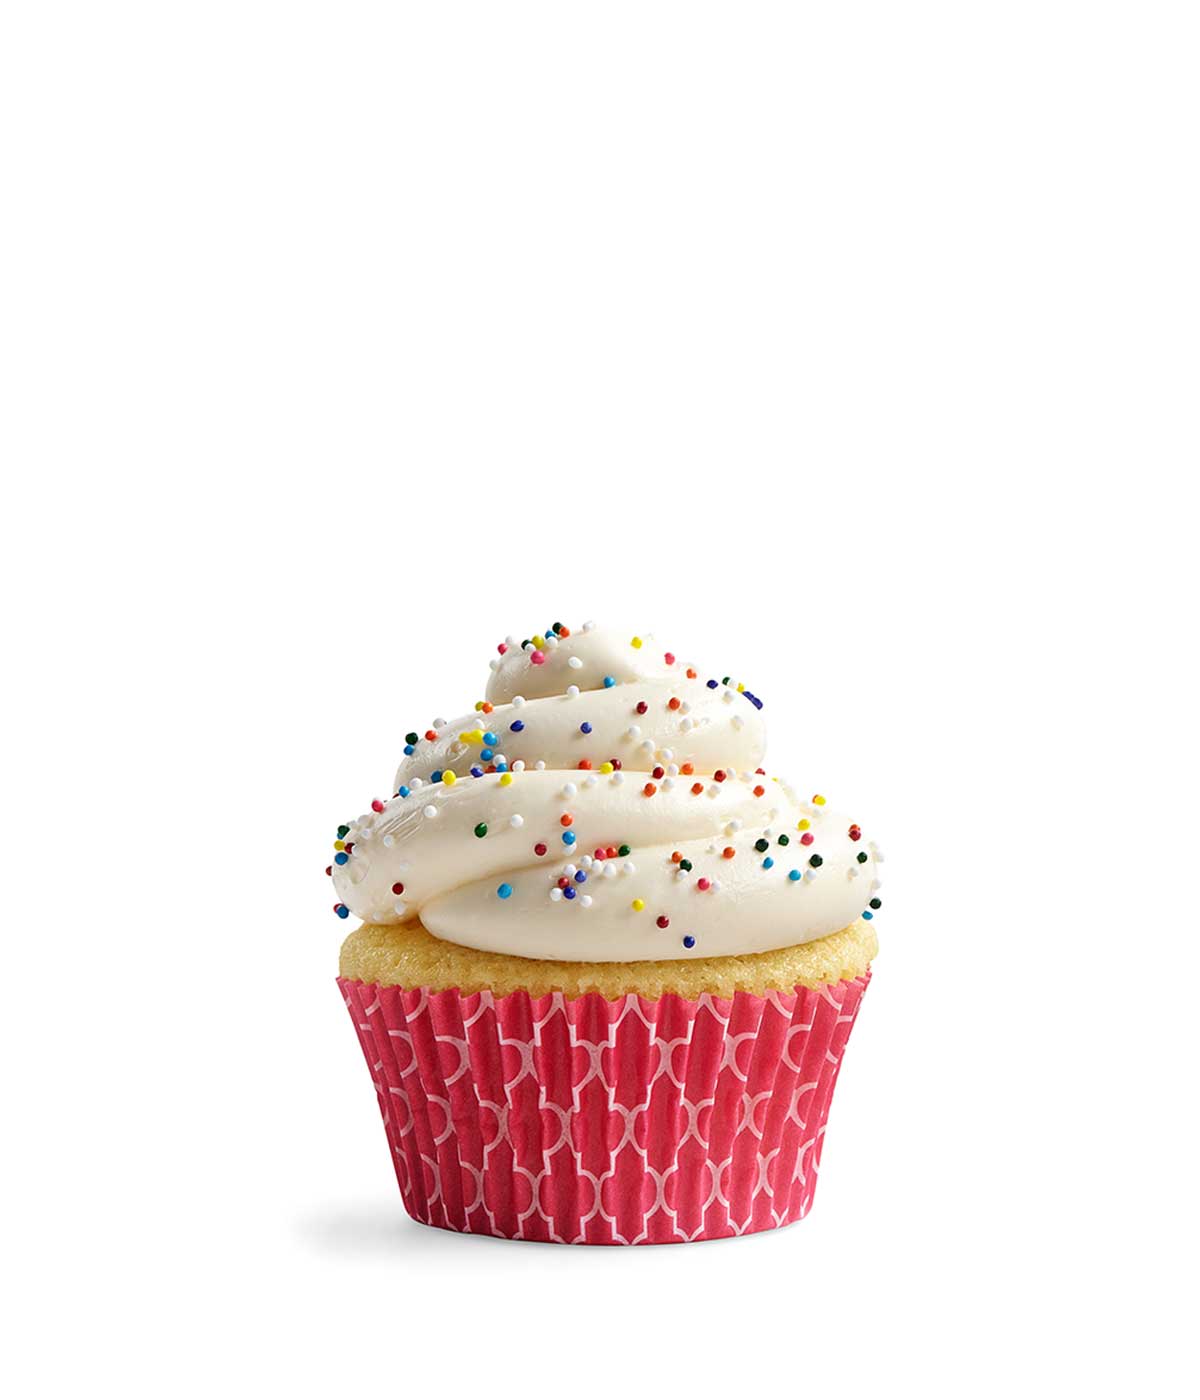 En klassisk vaniljcupcake med cream cheese frosting med regnbågsströssel, i ett rosa cupcakepapper.